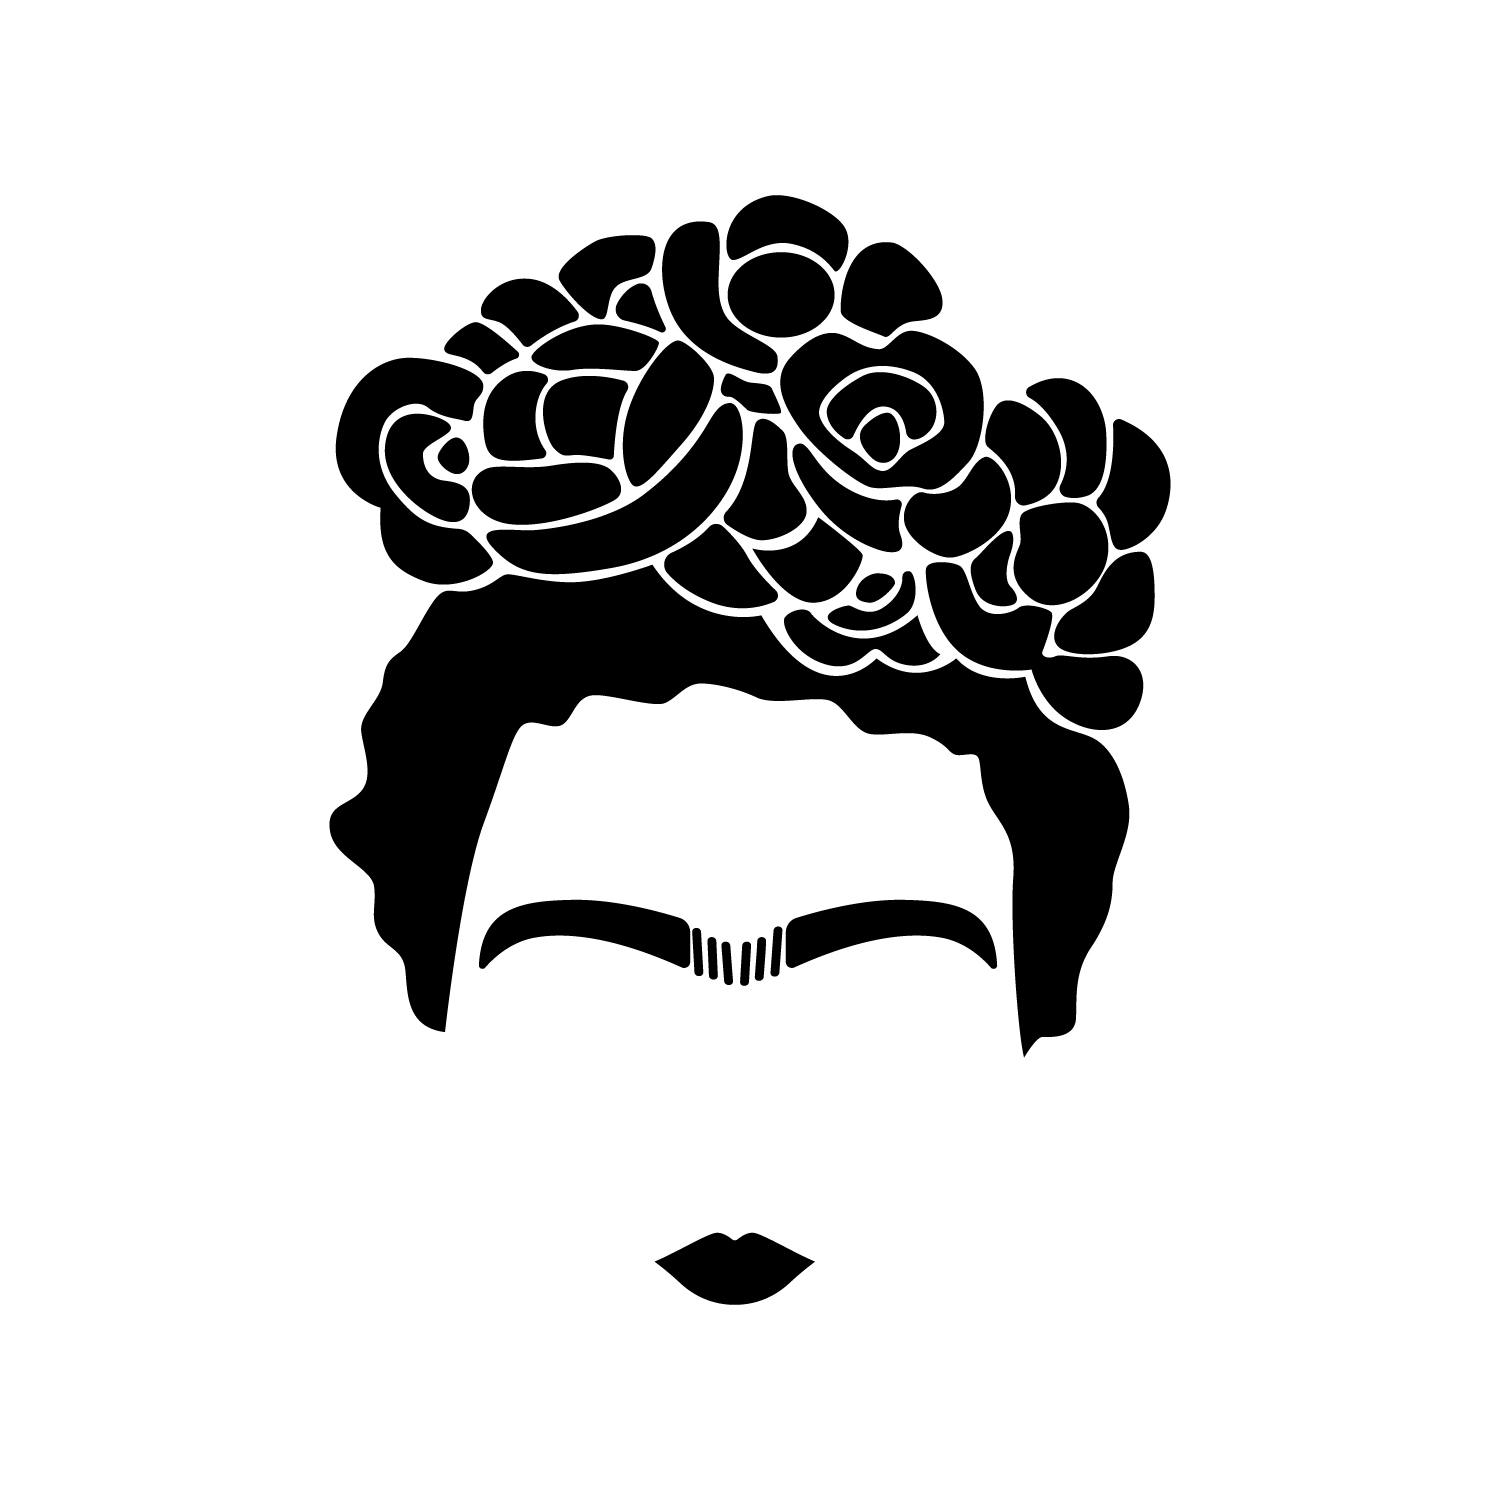 Frida Kahlo | eBay